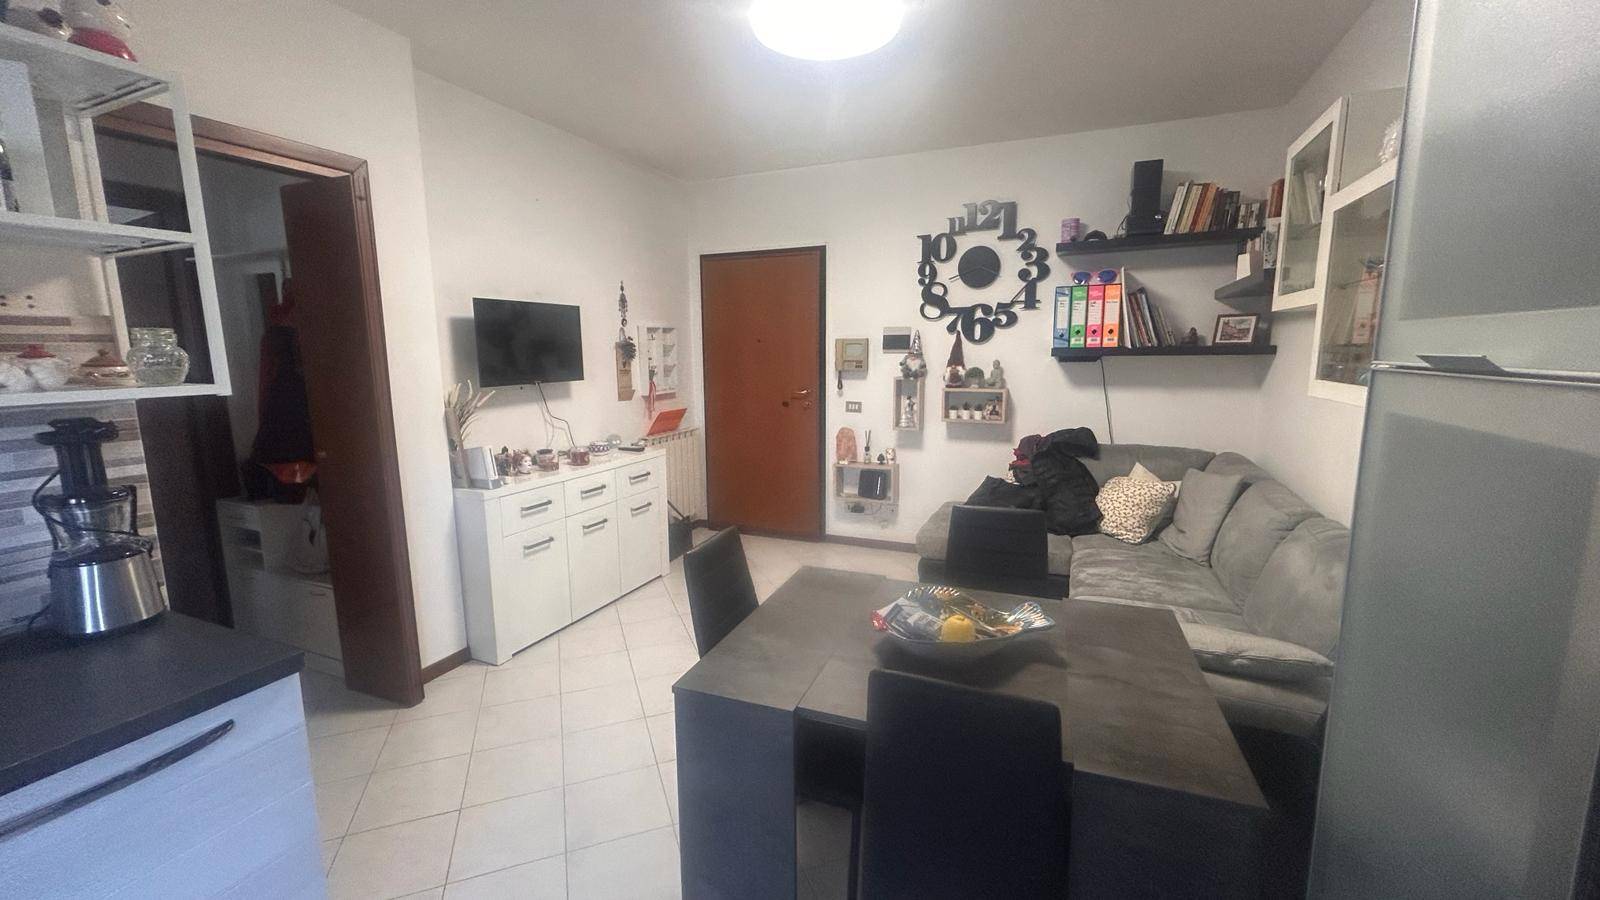 Appartamento in affitto a Busto Arsizio, 2 locali, zona Località: CinquePonti, prezzo € 700 | PortaleAgenzieImmobiliari.it